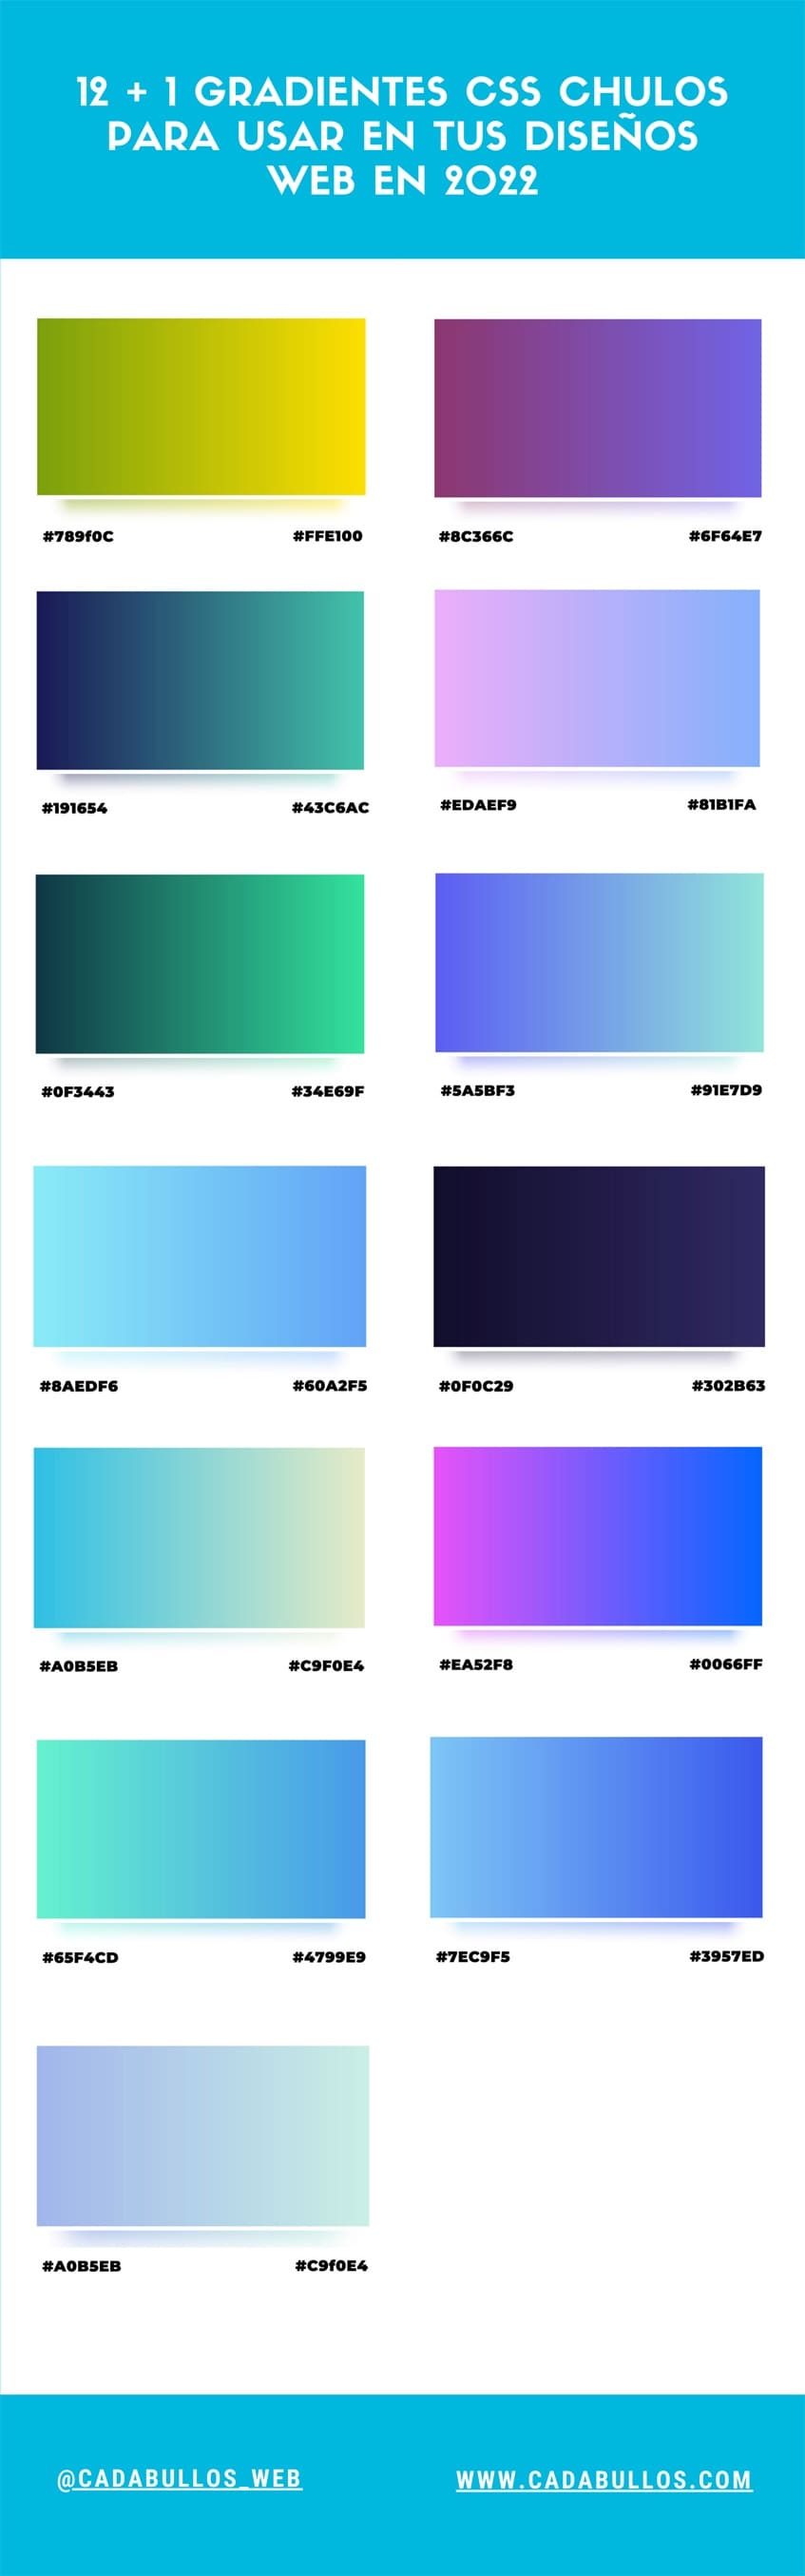 Infografía Infografía gradientes CSS para usar en tus diseños